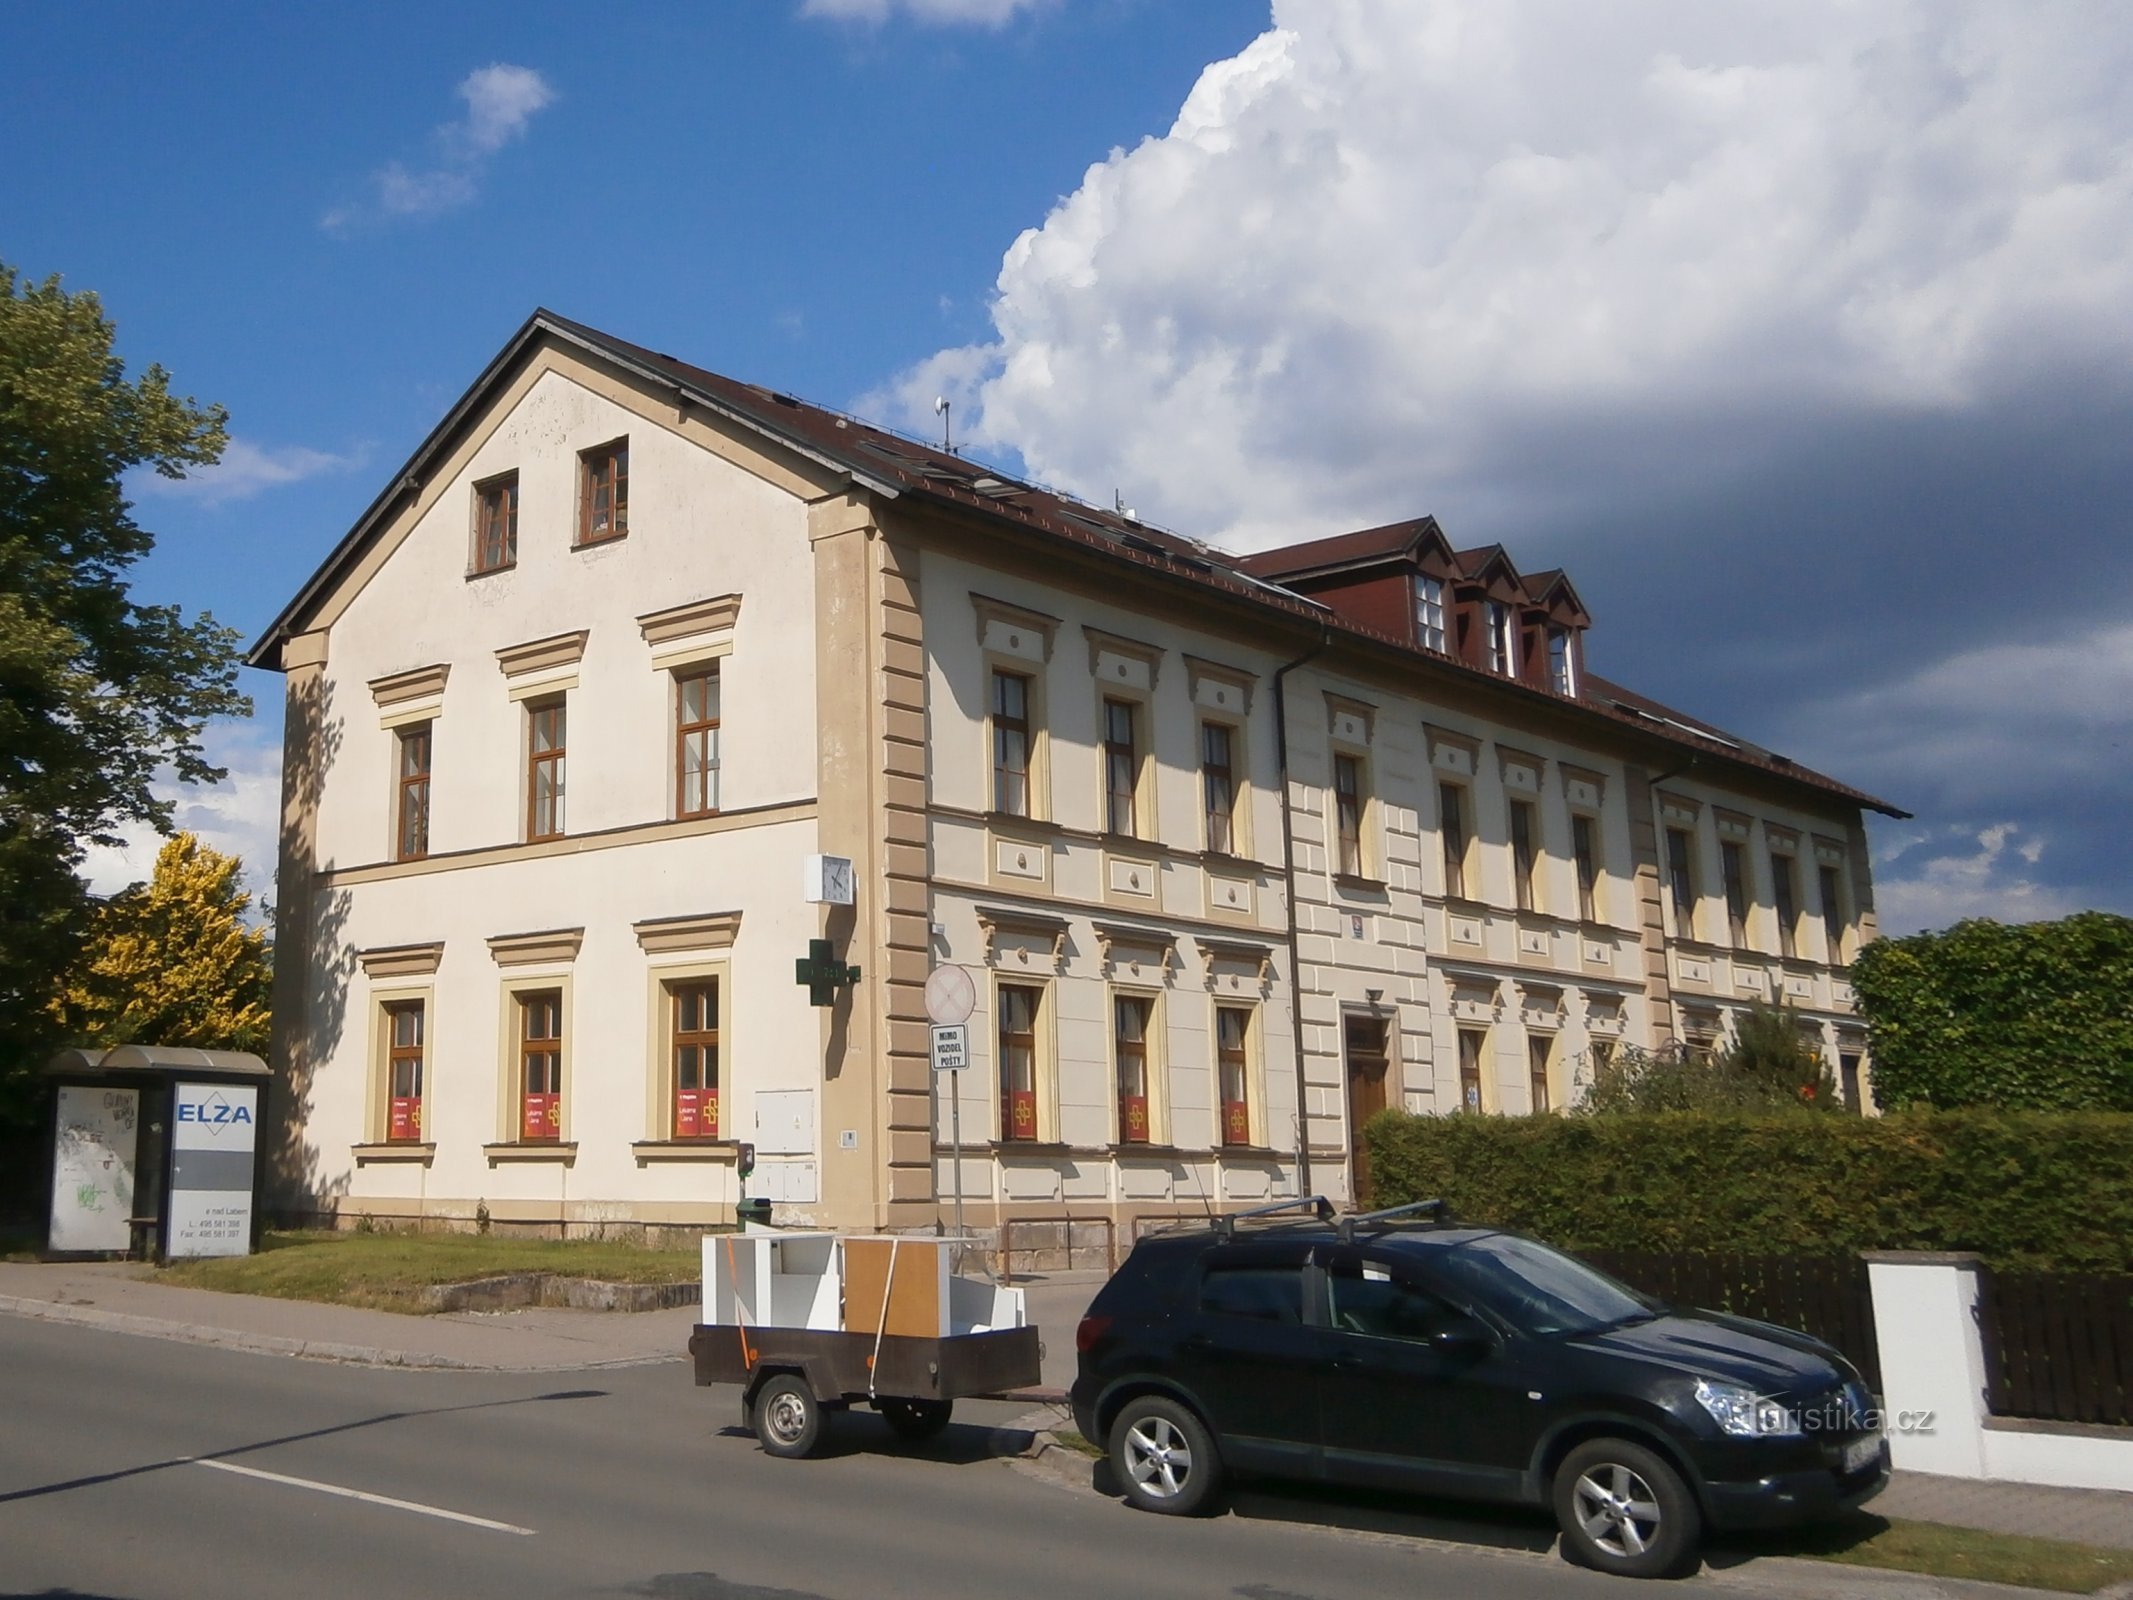 Obrońcy Pokoju nr 123 (Předměřice nad Labem, 10.6.2017)